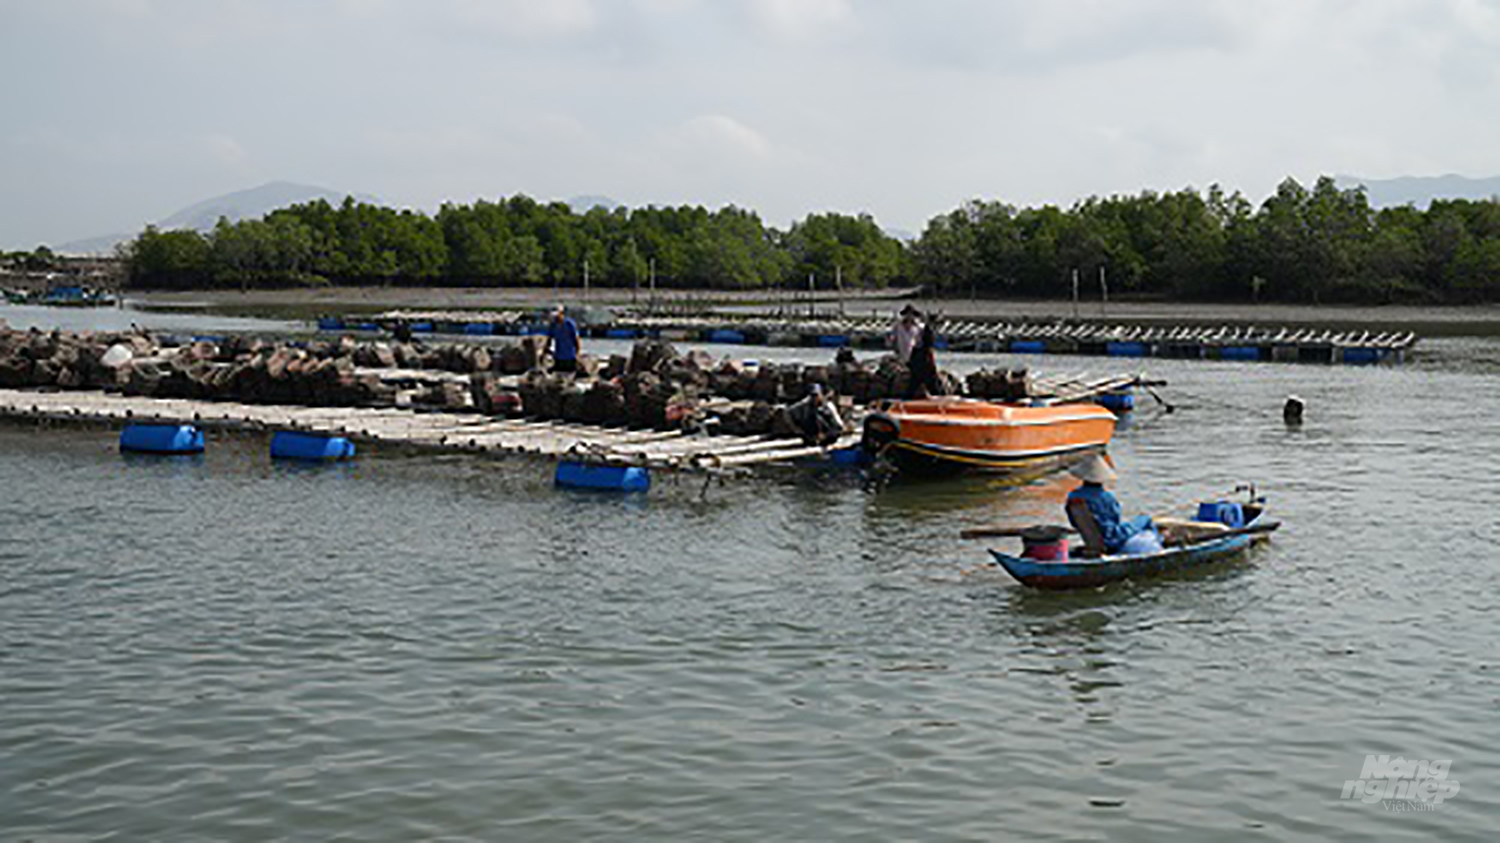 Để quản lý việc nuôi cá lồng bè và các nhuyễn thể trên hệ thống sông, UBND tỉnh BR-VT đã giao cho các địa phương tăng cường hoạt động thanh, kiểm tra nhằm ngăn chặn các lồng bè hoạt động tự phát. Ảnh: Hồng Thủy.